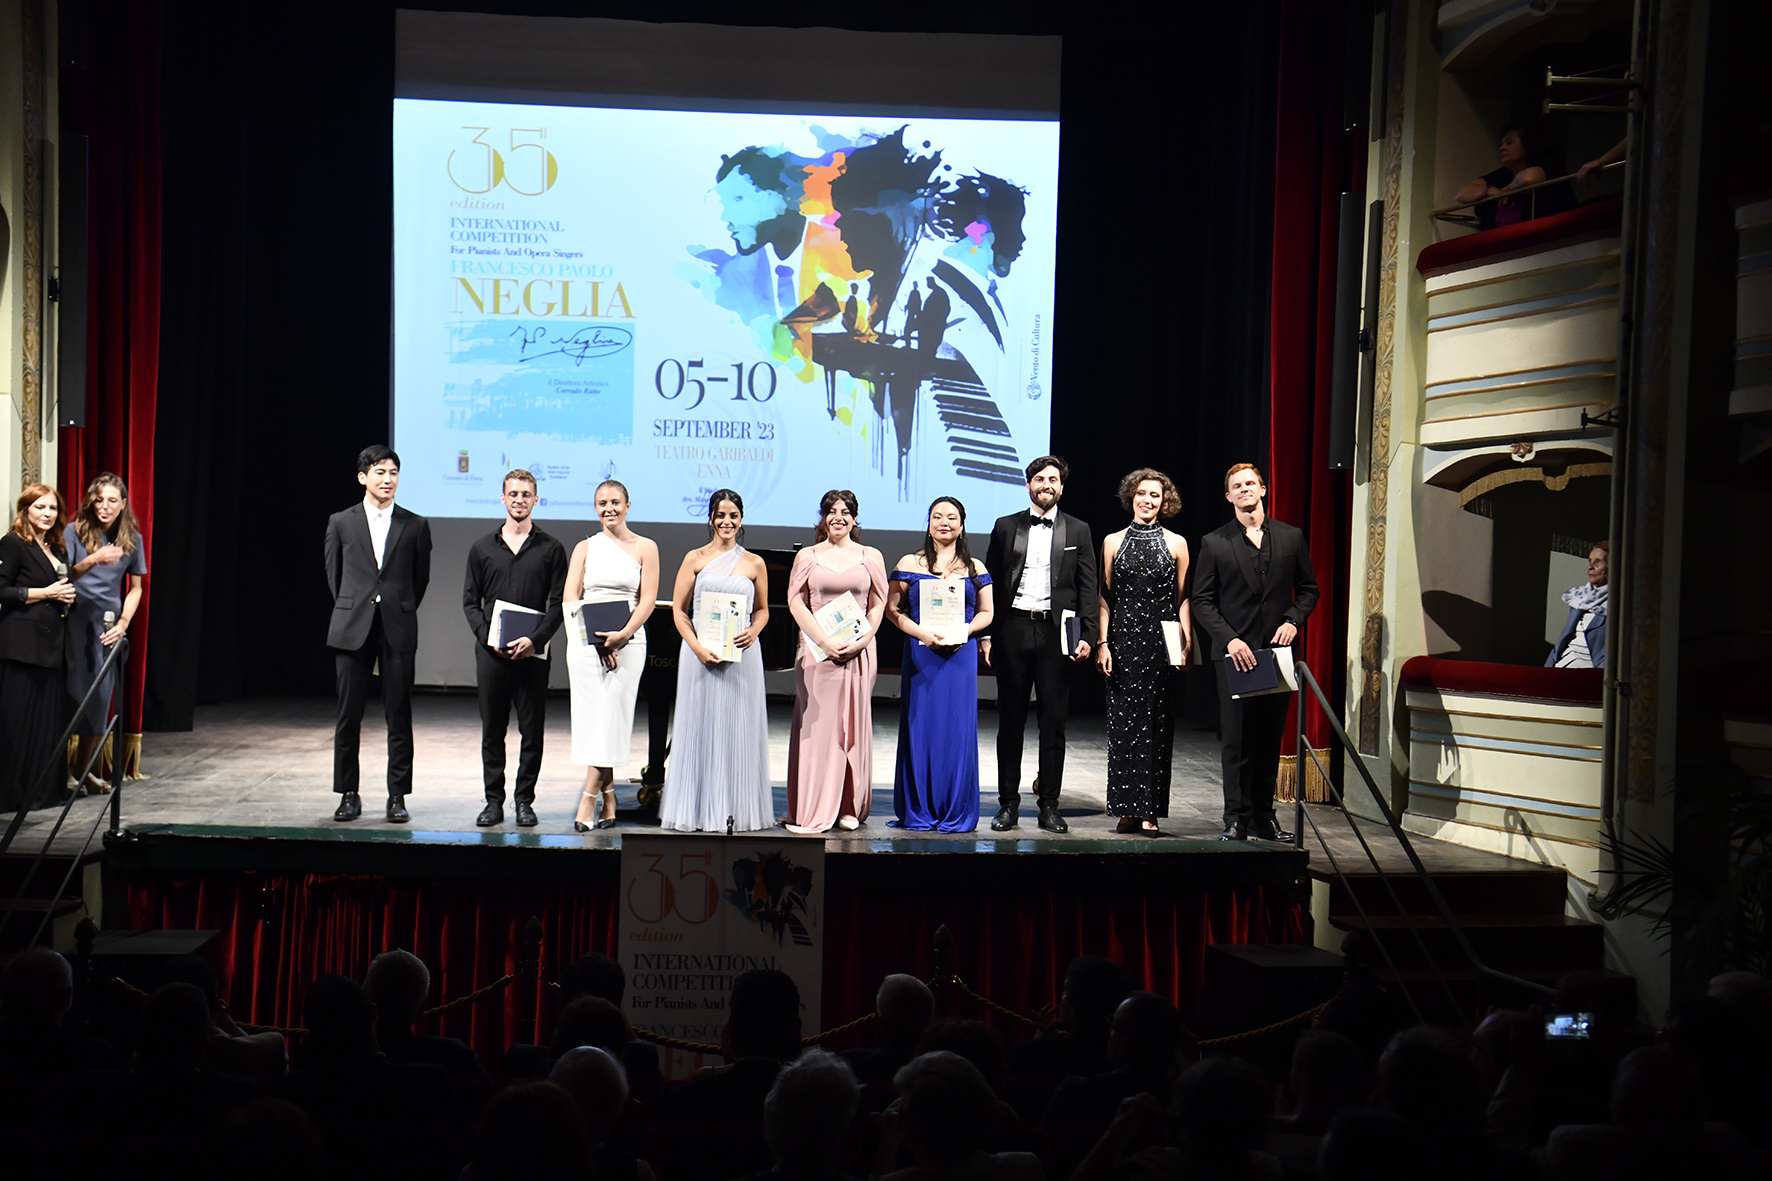 35° Concorso internazionale “Francesco Paolo Neglia” vincono il pianista Shalom Rozenbaum Malachi e la cantante Zuzana Jerabkova